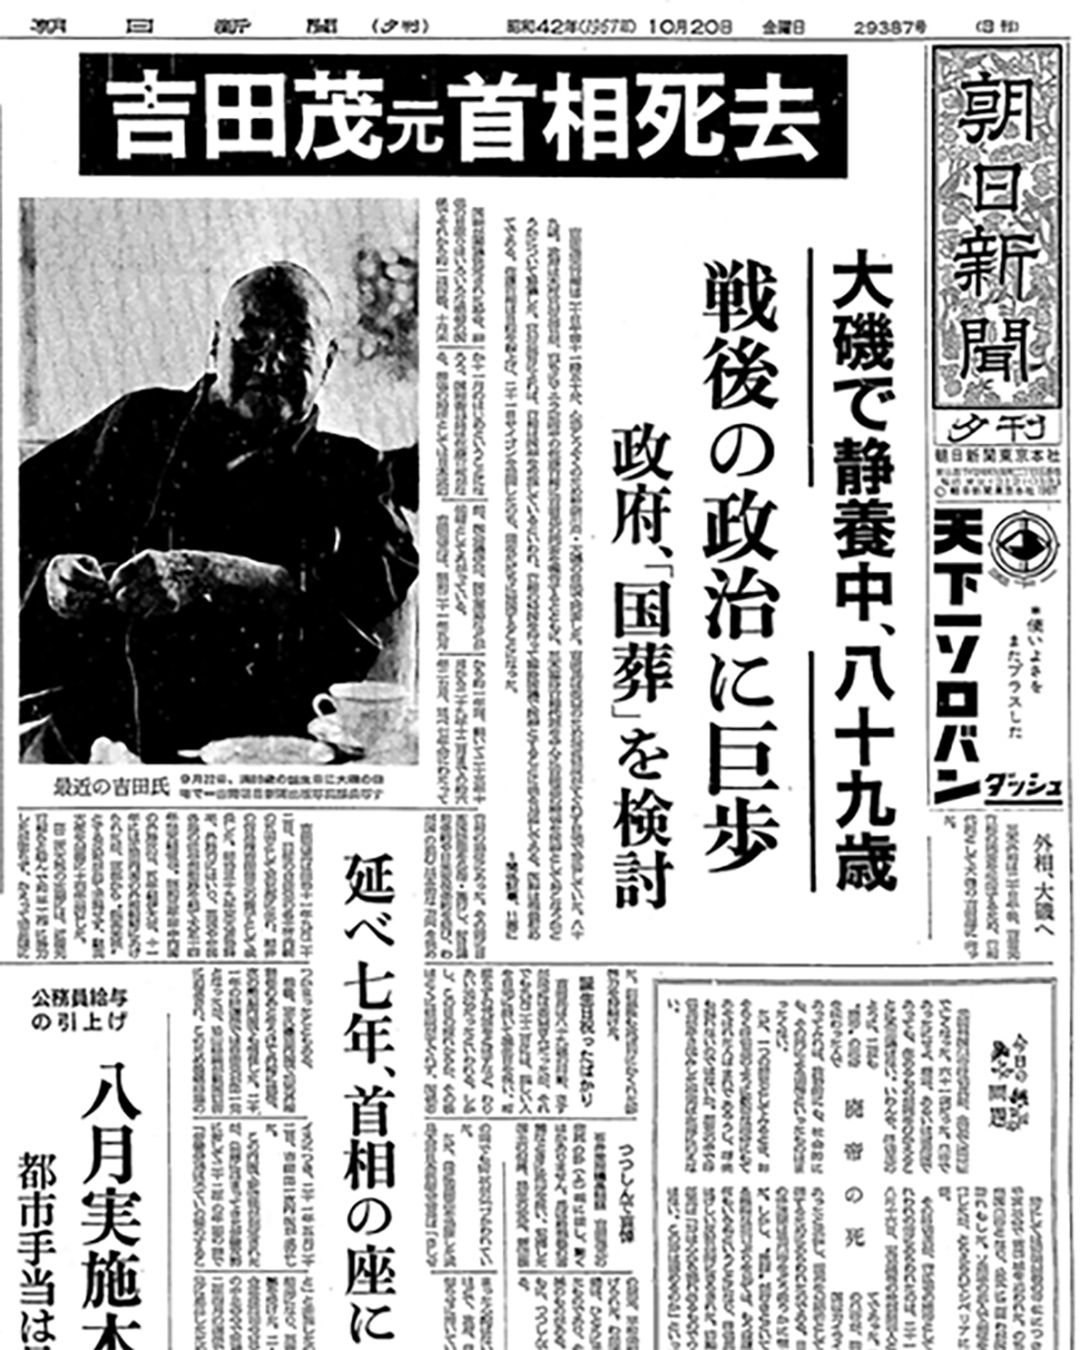 昭和42年10月20日付朝日新聞・夕刊